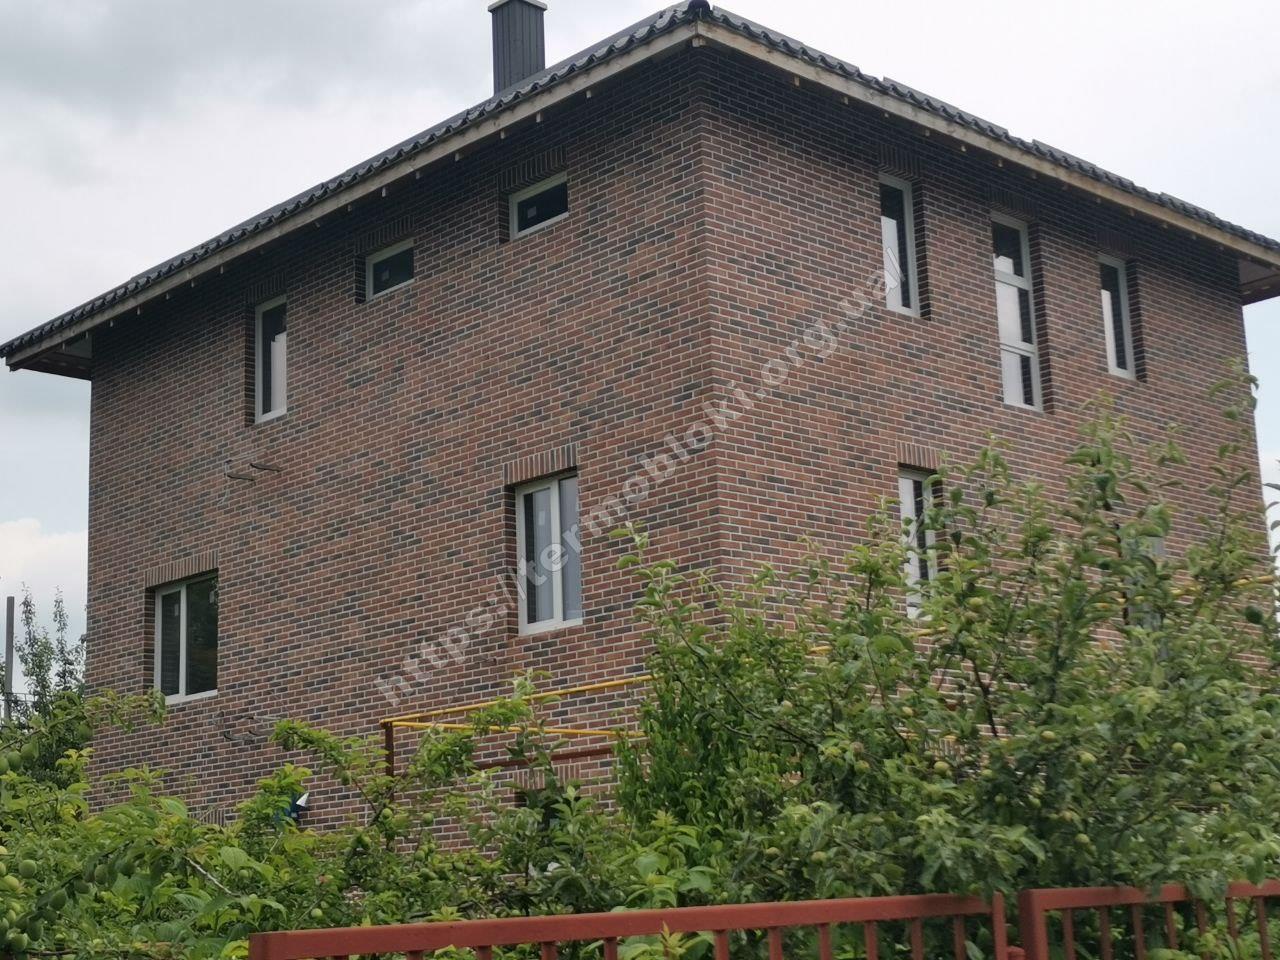 Vinnytsia (loft brick chili)